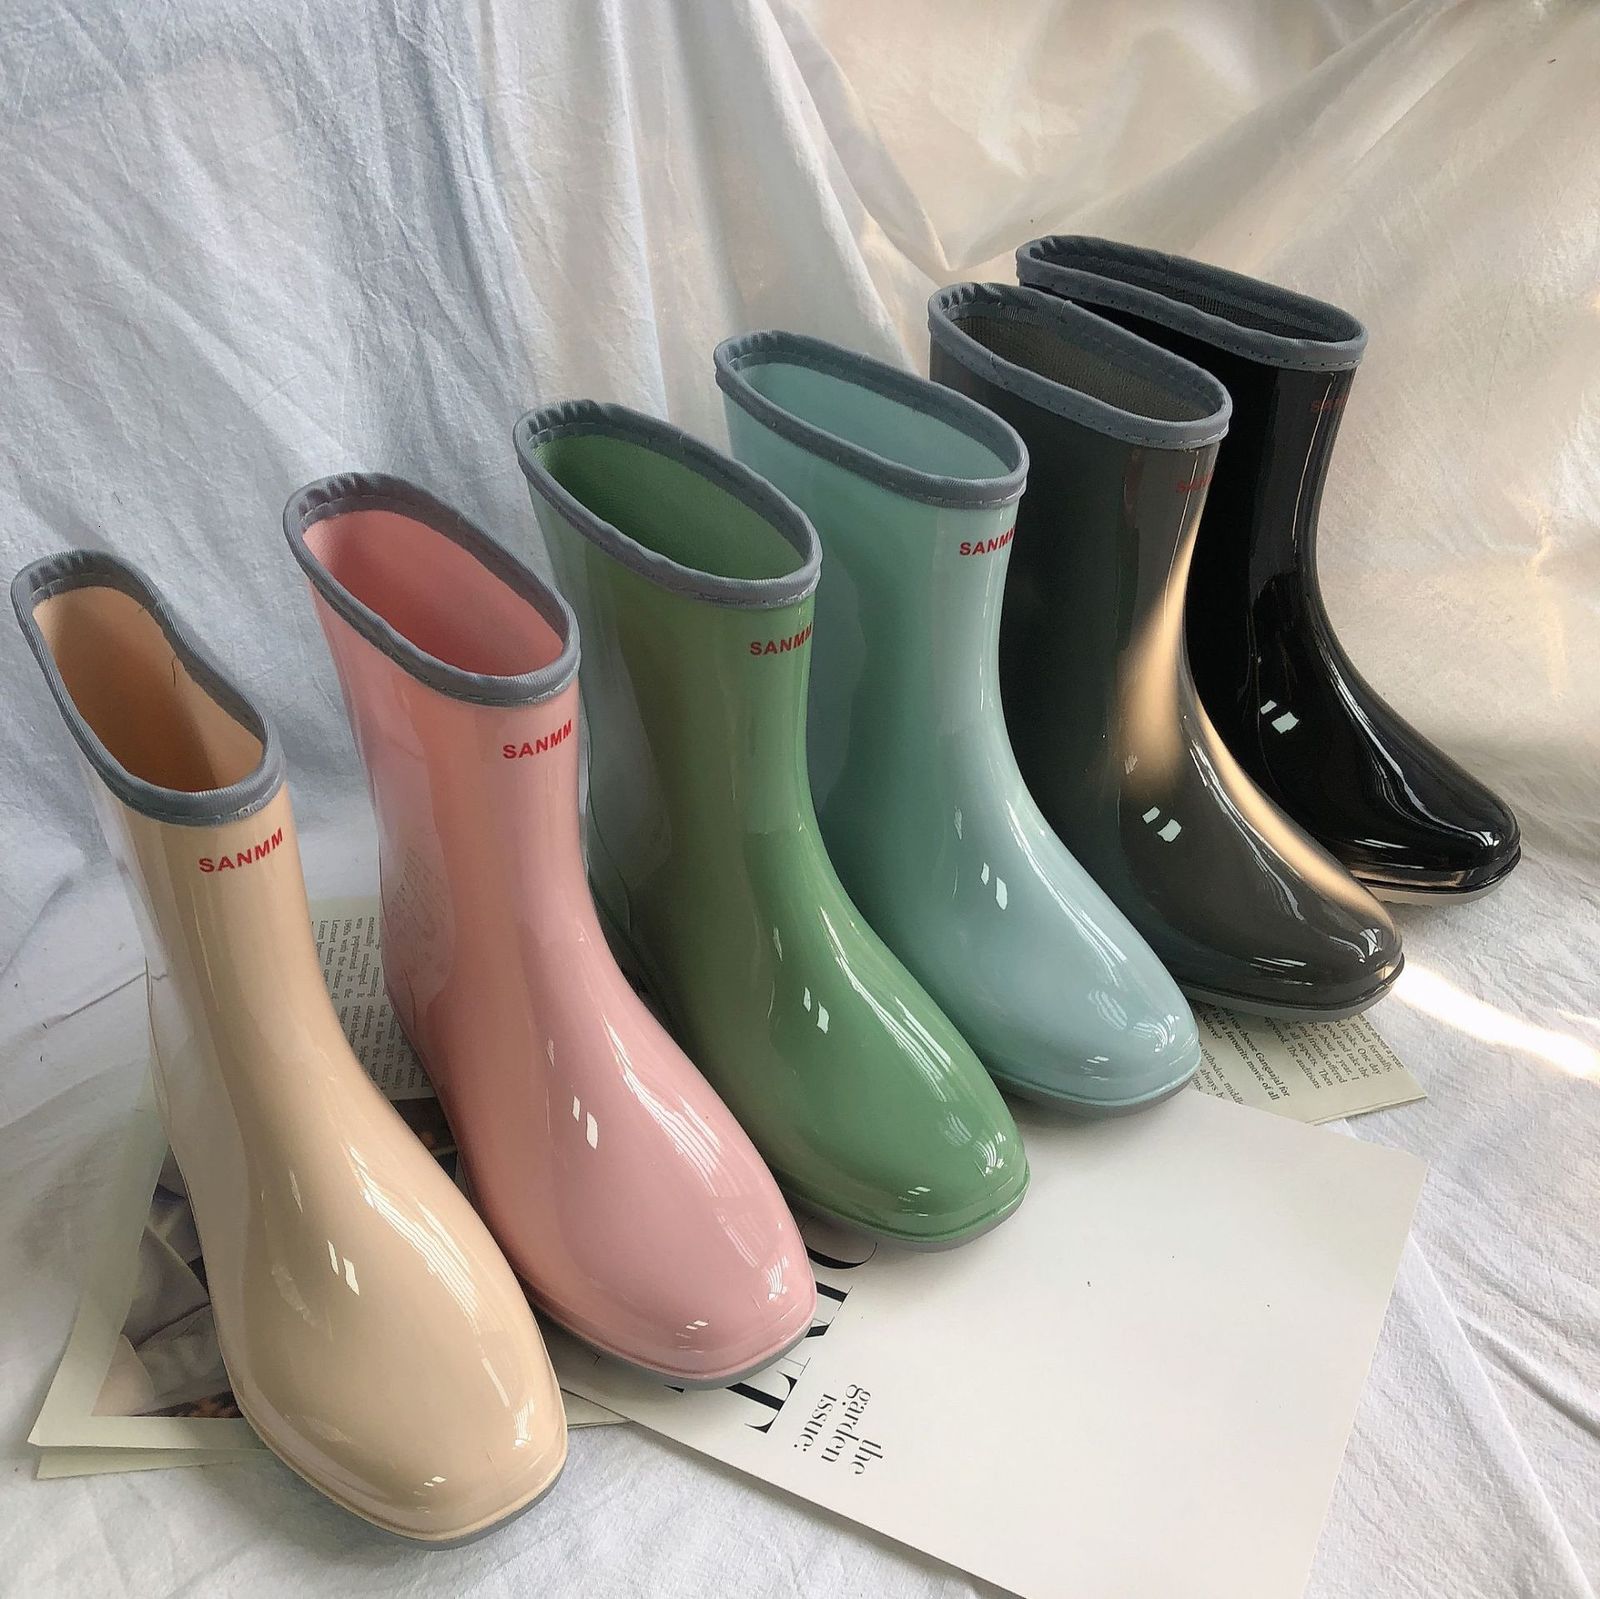 Yağmur Botları Orta Kalf Yağmur Botları Kadın Platform Kauçuk Ayakkabı Moda Açık Moda Yağmur Ayakkabı Botları Kadınlar İçin Su Geçirmez İş Botinler Mujer 230302